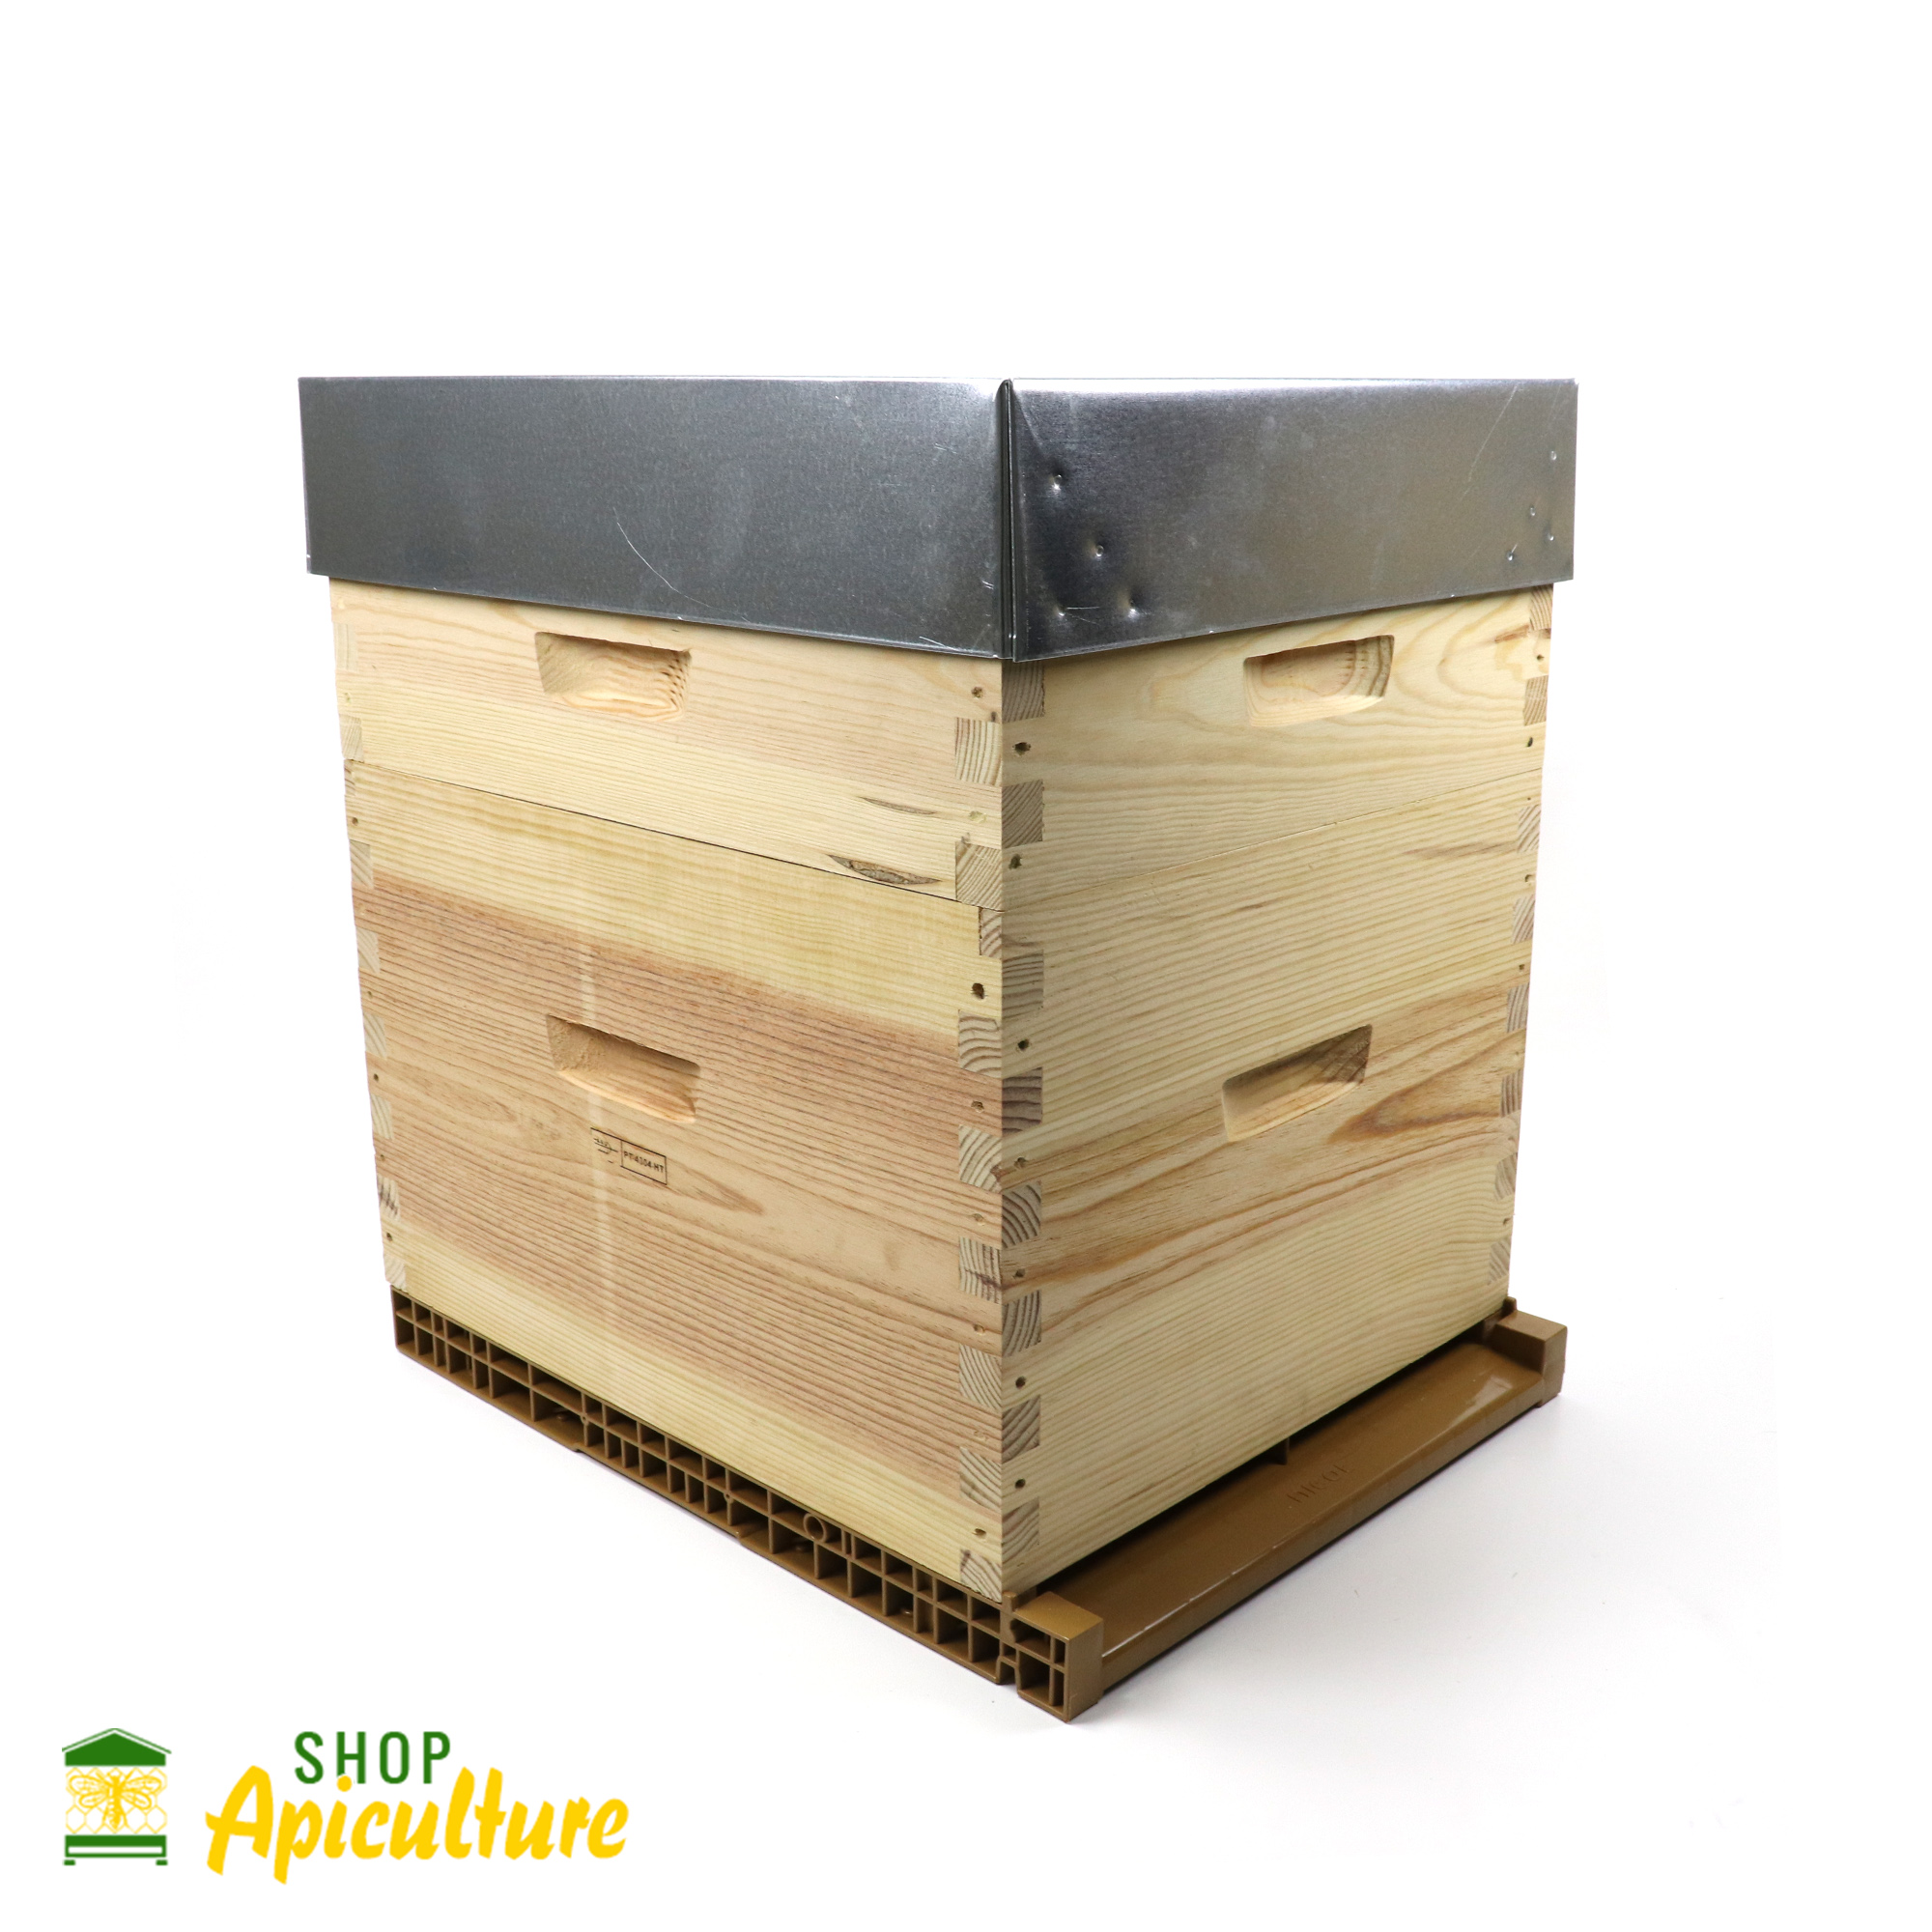 BOUTEILLE 50CL PACK DE 12 UNITÉS 6493 : SHOP APICULTURE: Tout le matériel  pour l'apiculture, l'apiculteur et les abeilles.